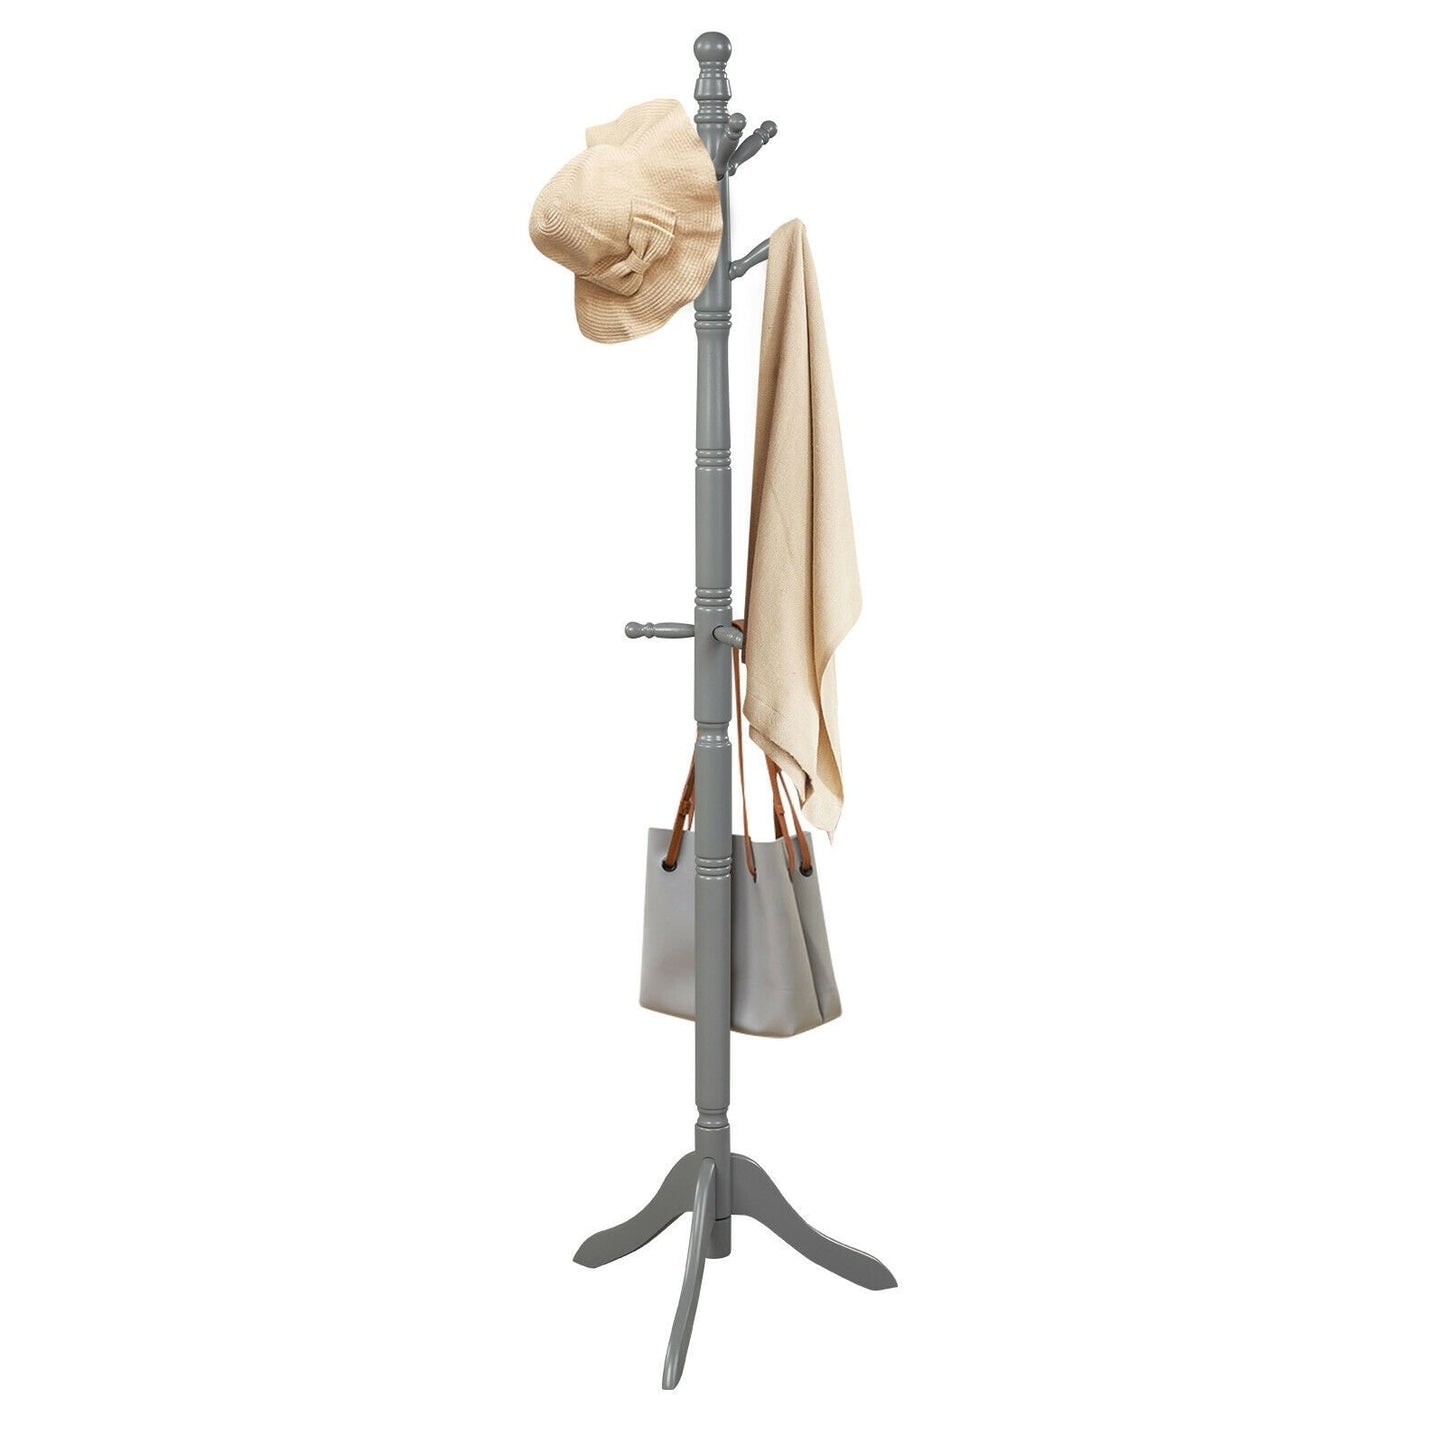 Adjustable Free Standing Wooden Coat Rack, Gray